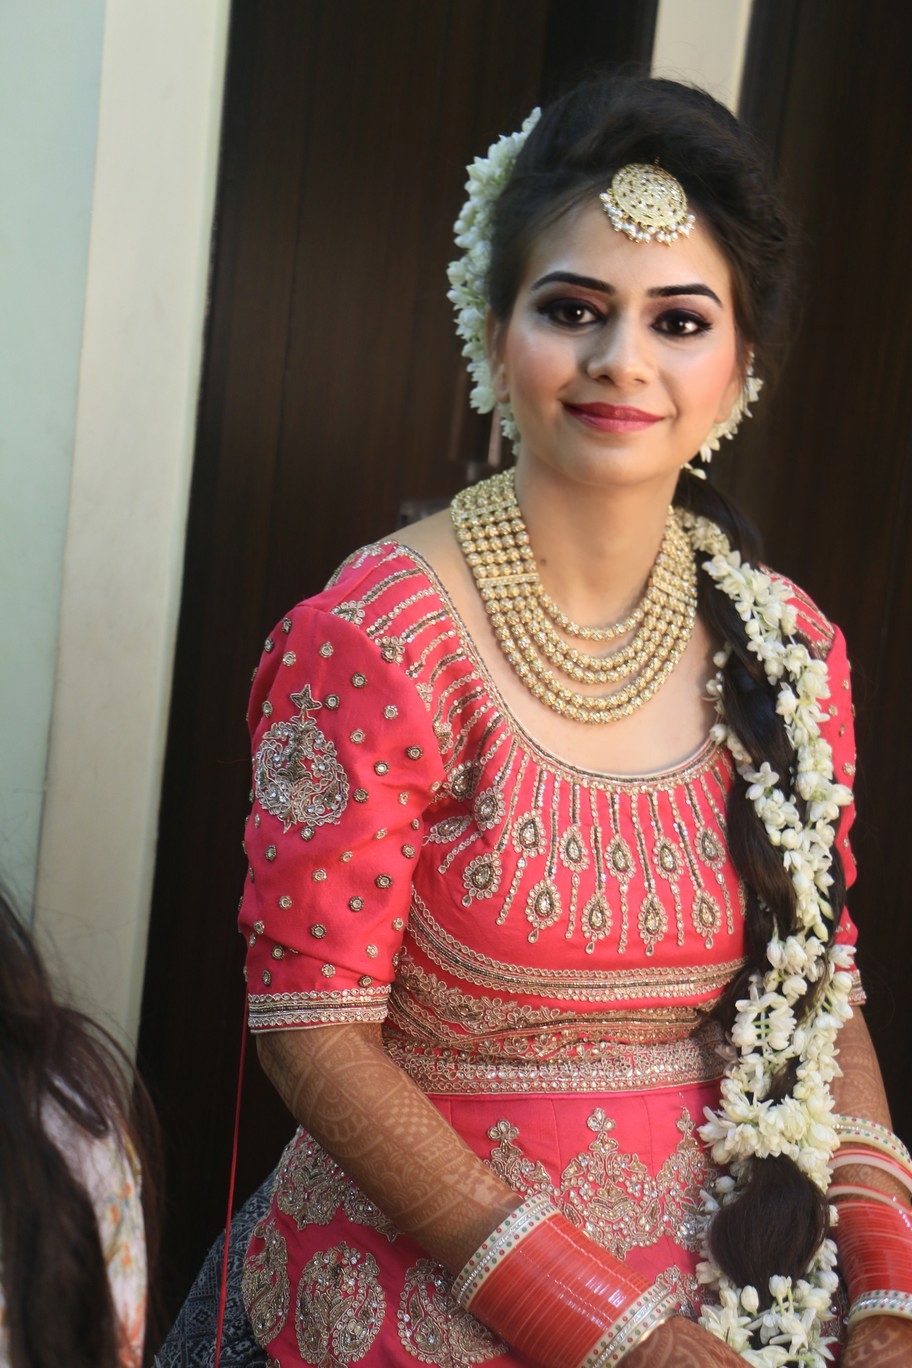 Sikh bride makeup ideas